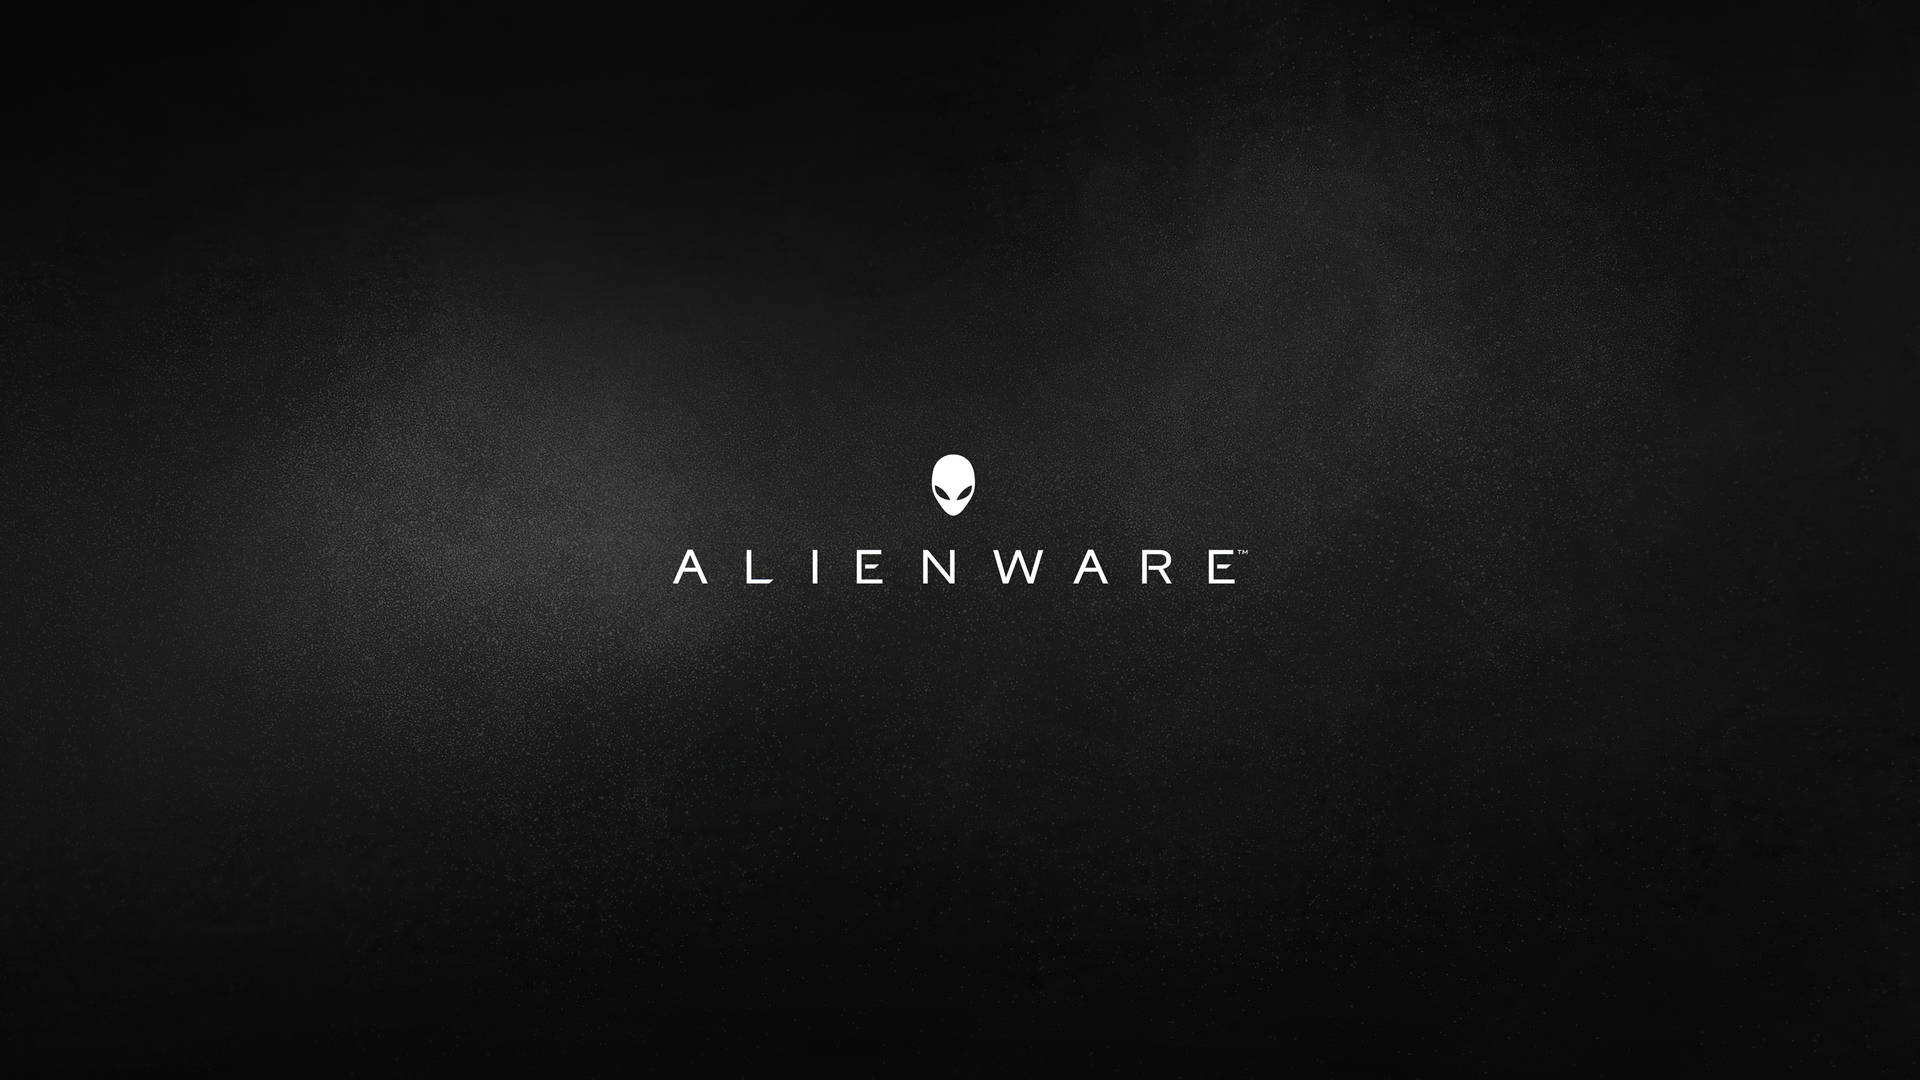 White Alienware In Smoky Black